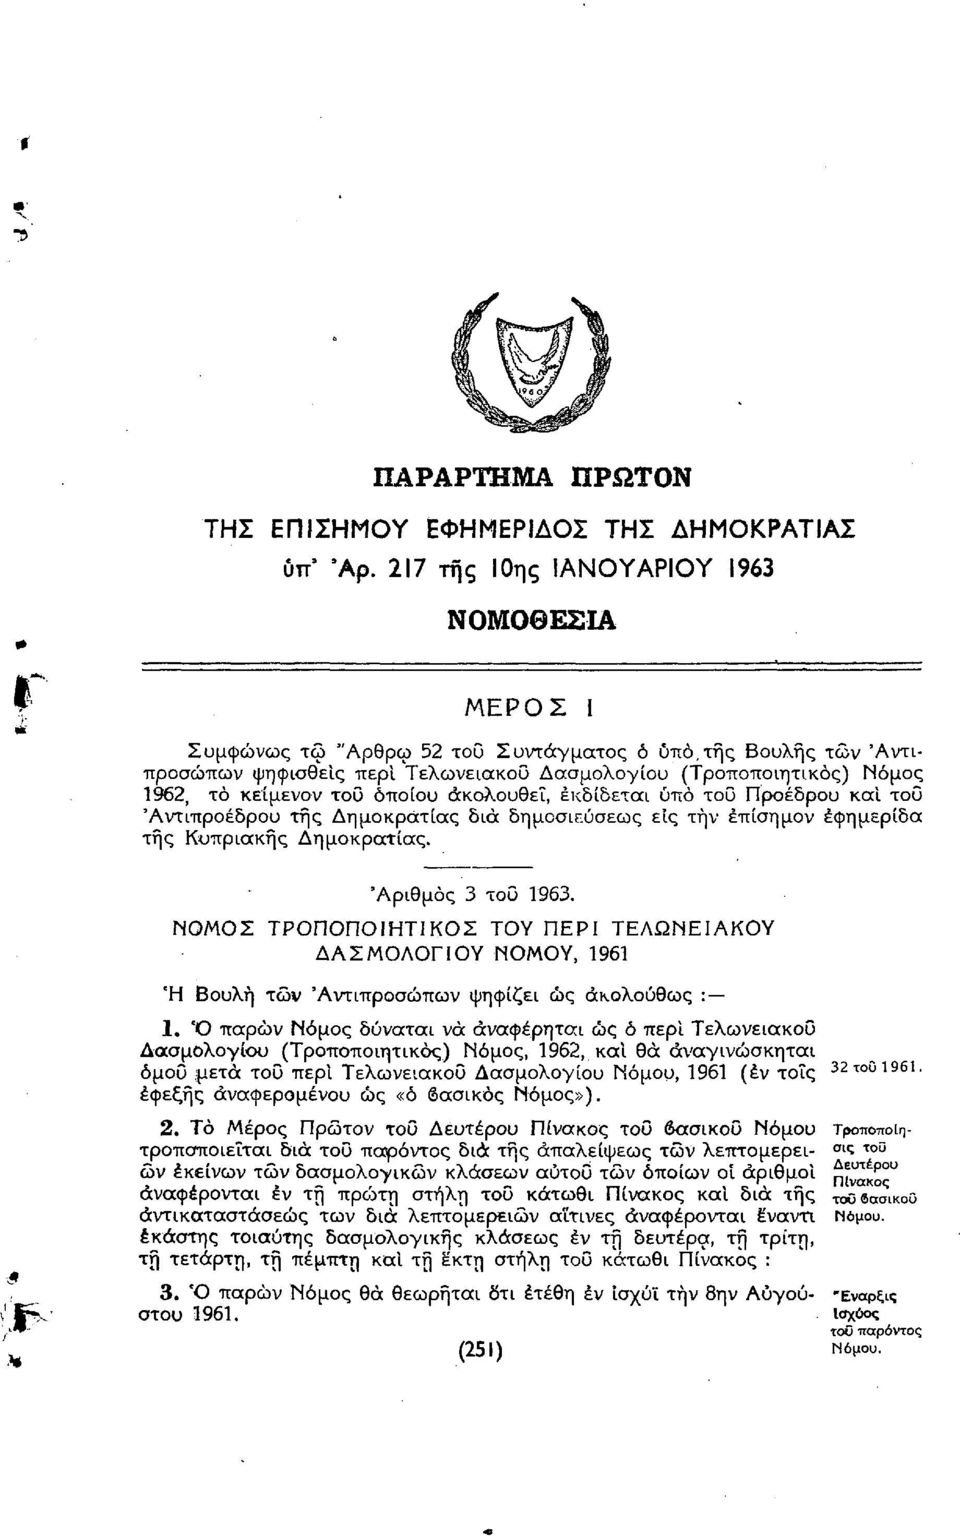 του οποίου ακολουθεί, εκδίδεται υπό του Προέδρου και τοο 'Αντιπροέδρου της Δημοκρατίας δια δημοσιεύσεως είς την έπίσημον εφημερίδα της Κυπριακής Δημοκρατίας. 'Αριθμός 3 του 1963.